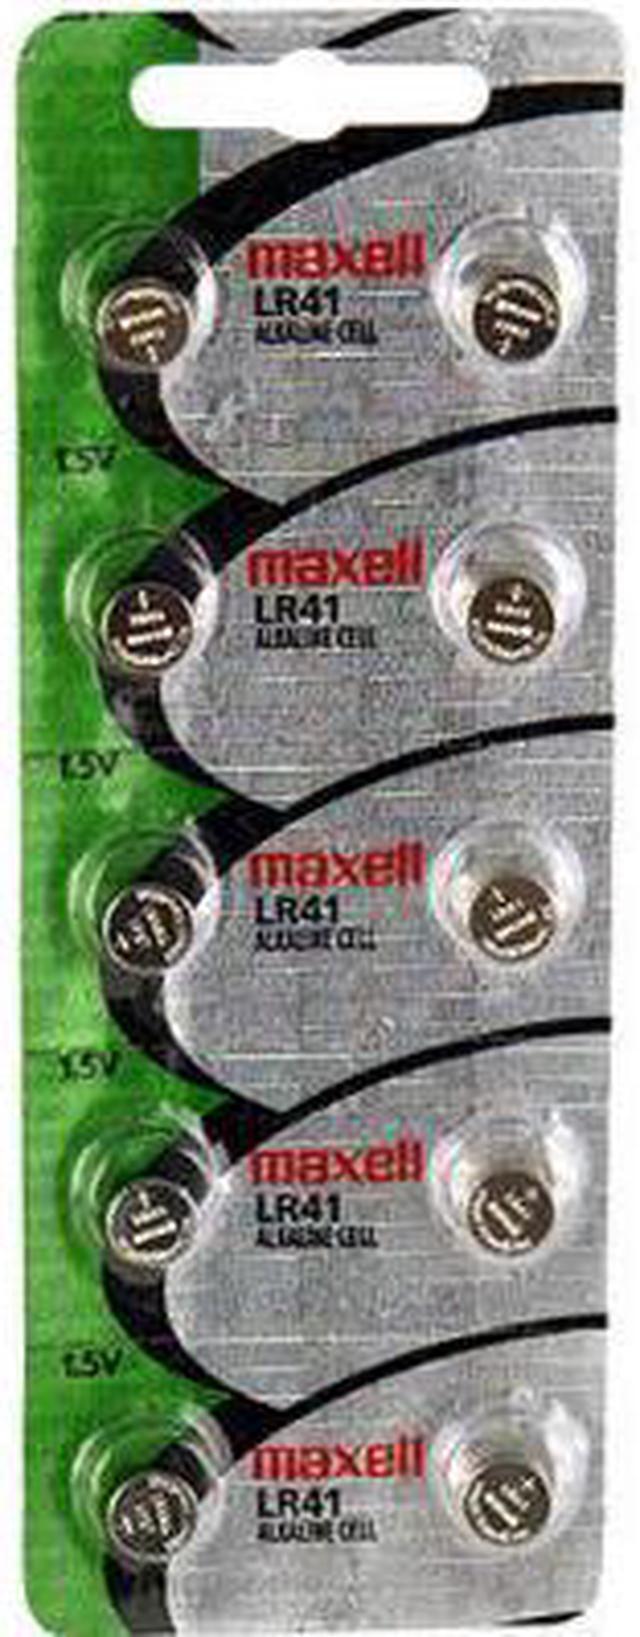 2 x Maxell LR41 /192 / AG3 / V3GA 1.5v Alkaline Button Cell Battery  Batteries